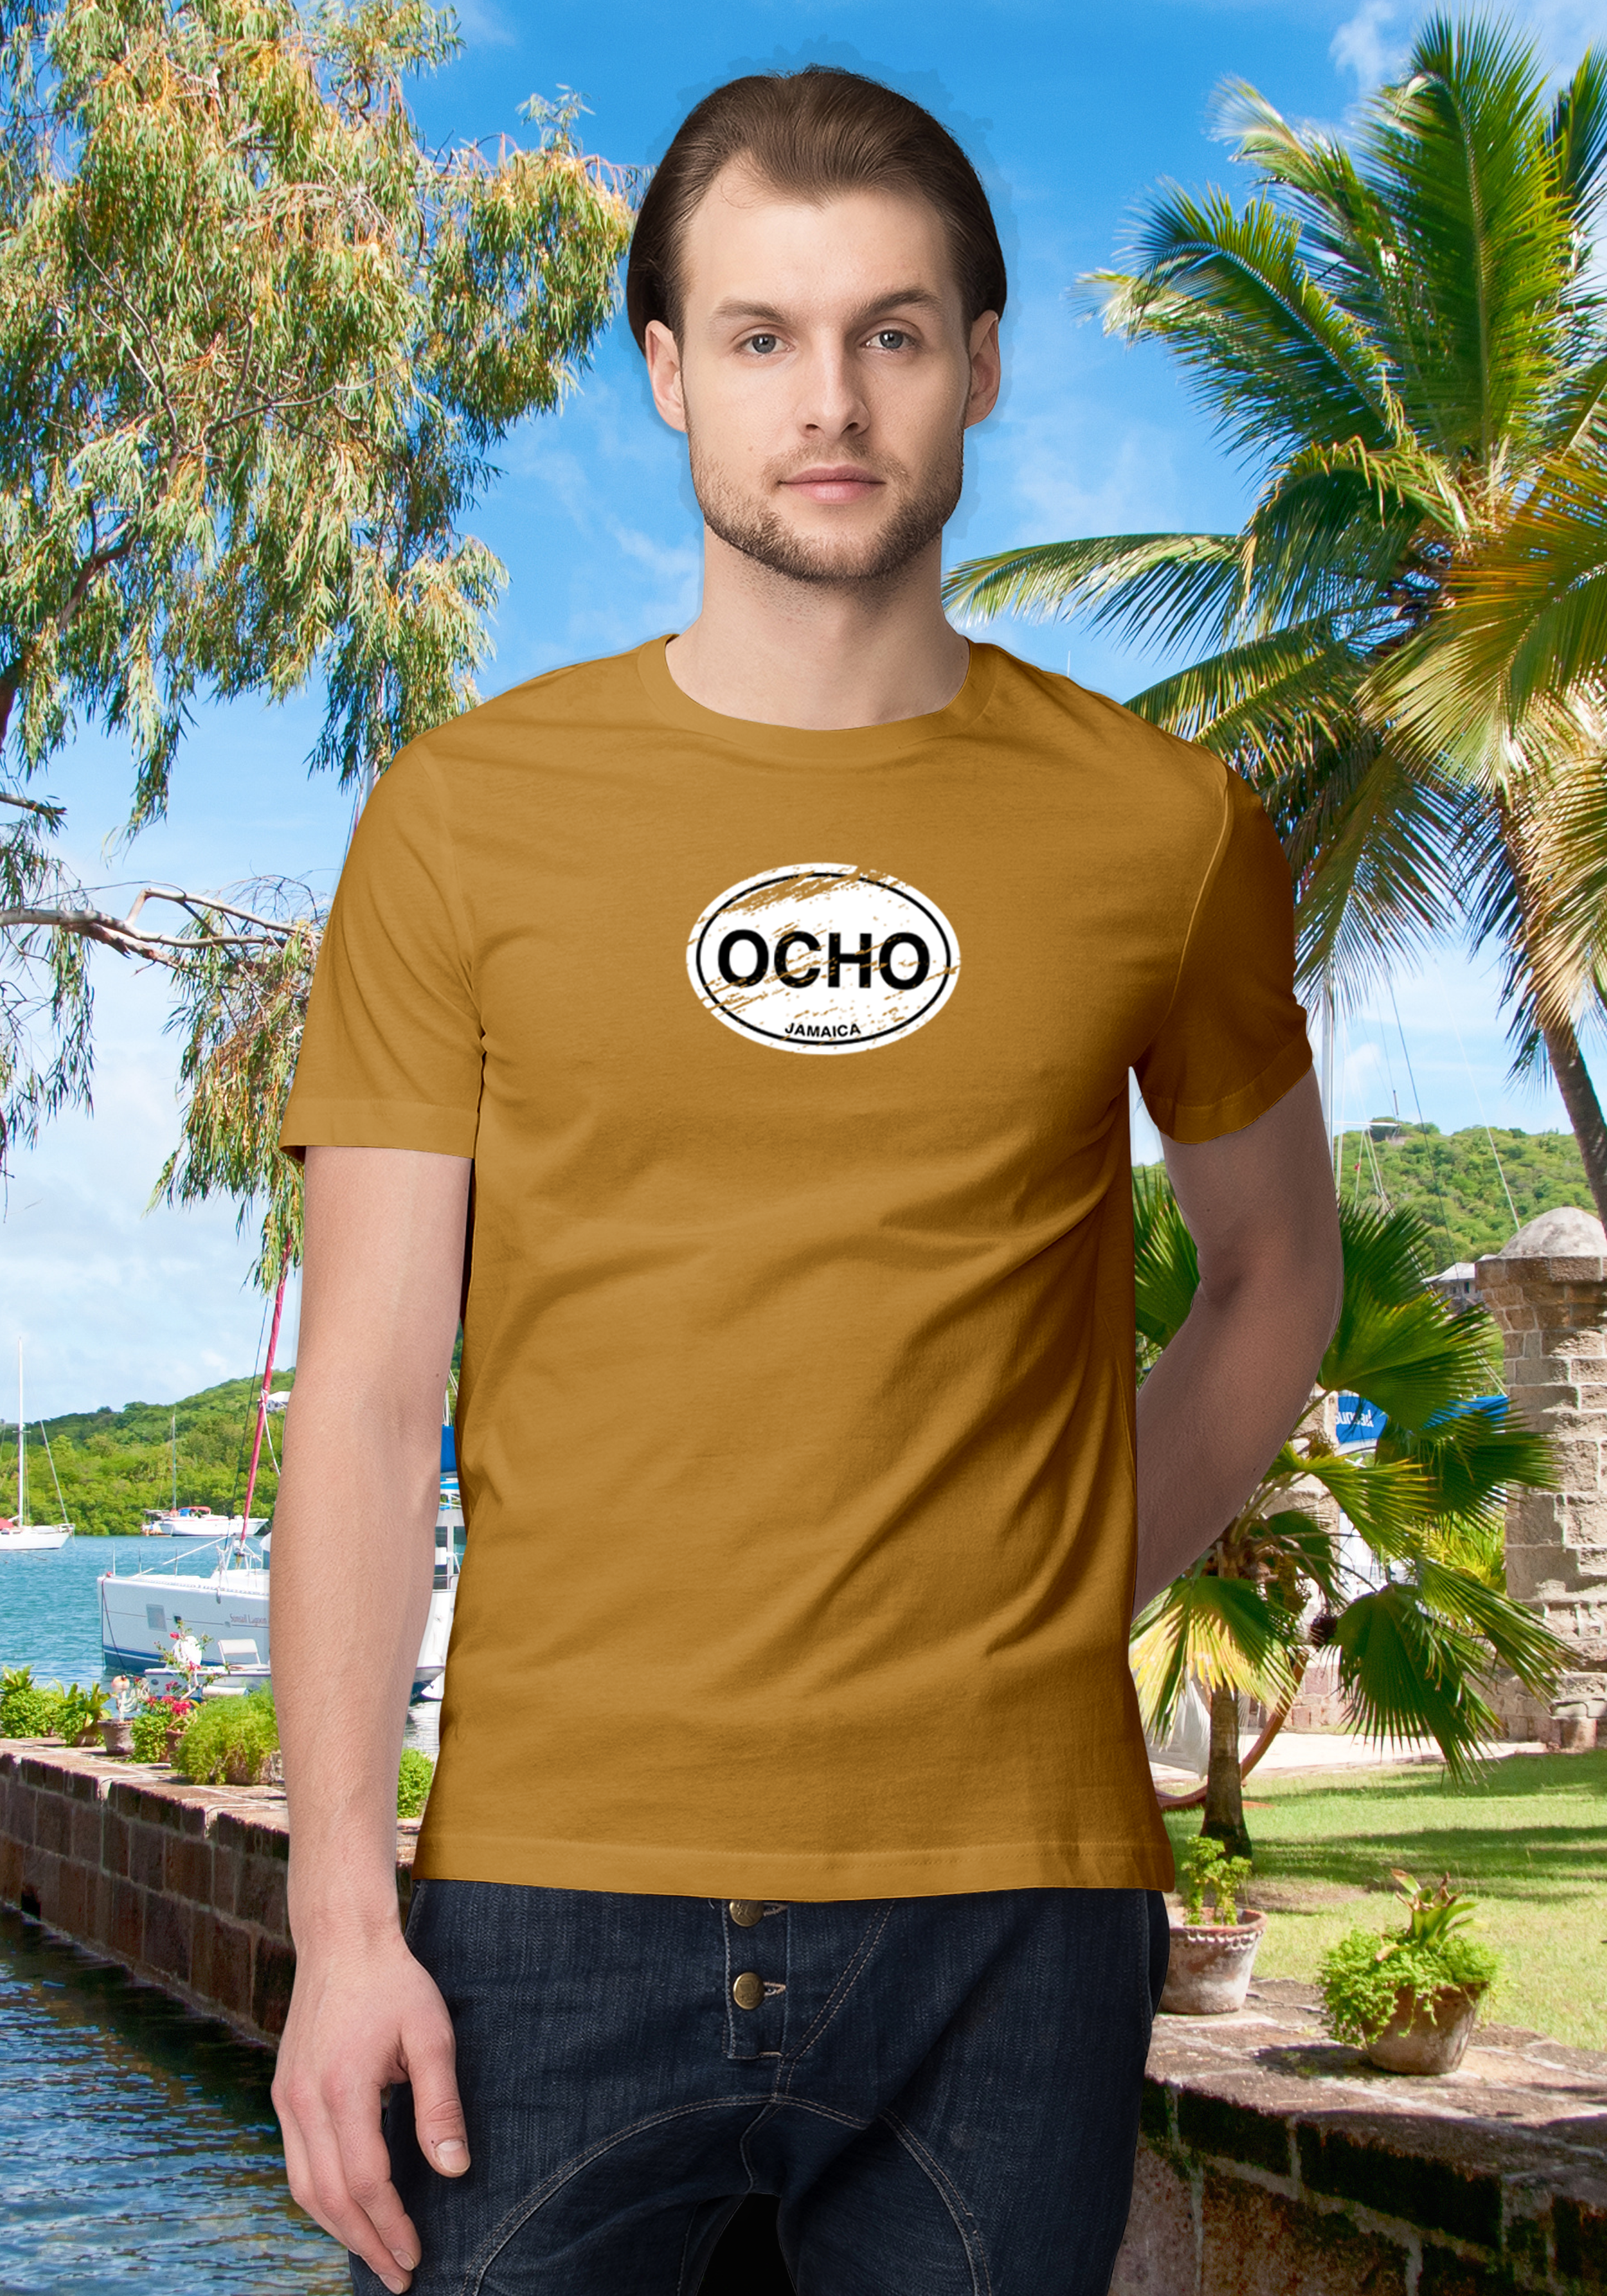 Ocho Rios Men's Classic T-Shirt Souvenirs - My Destination Location